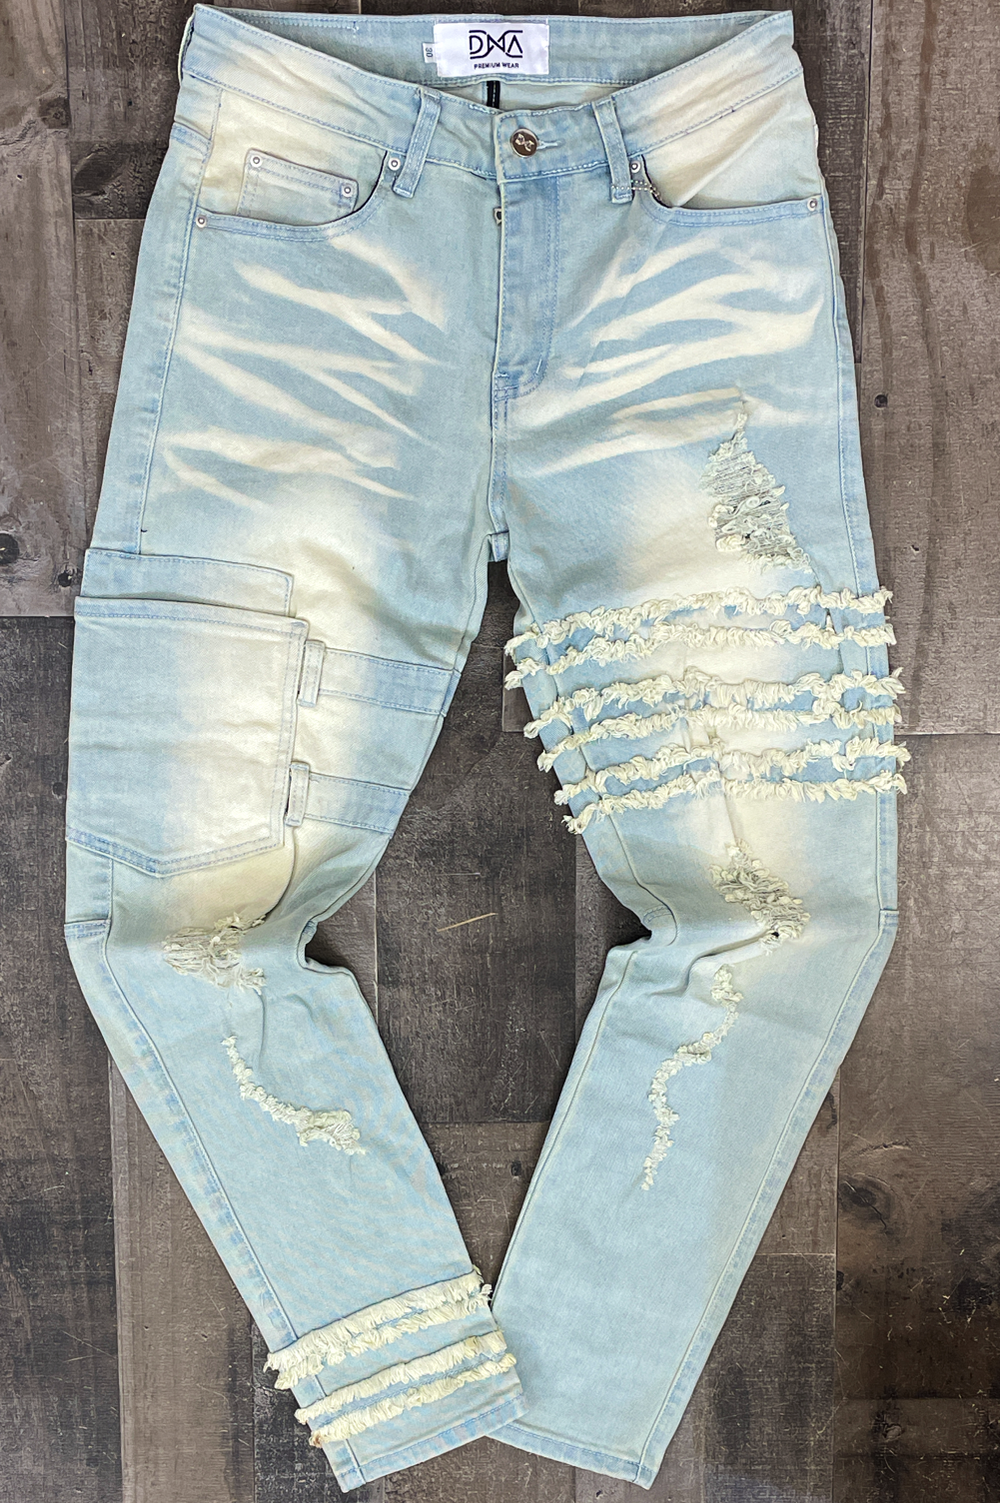 Dna Premium Wear- shredded jeans